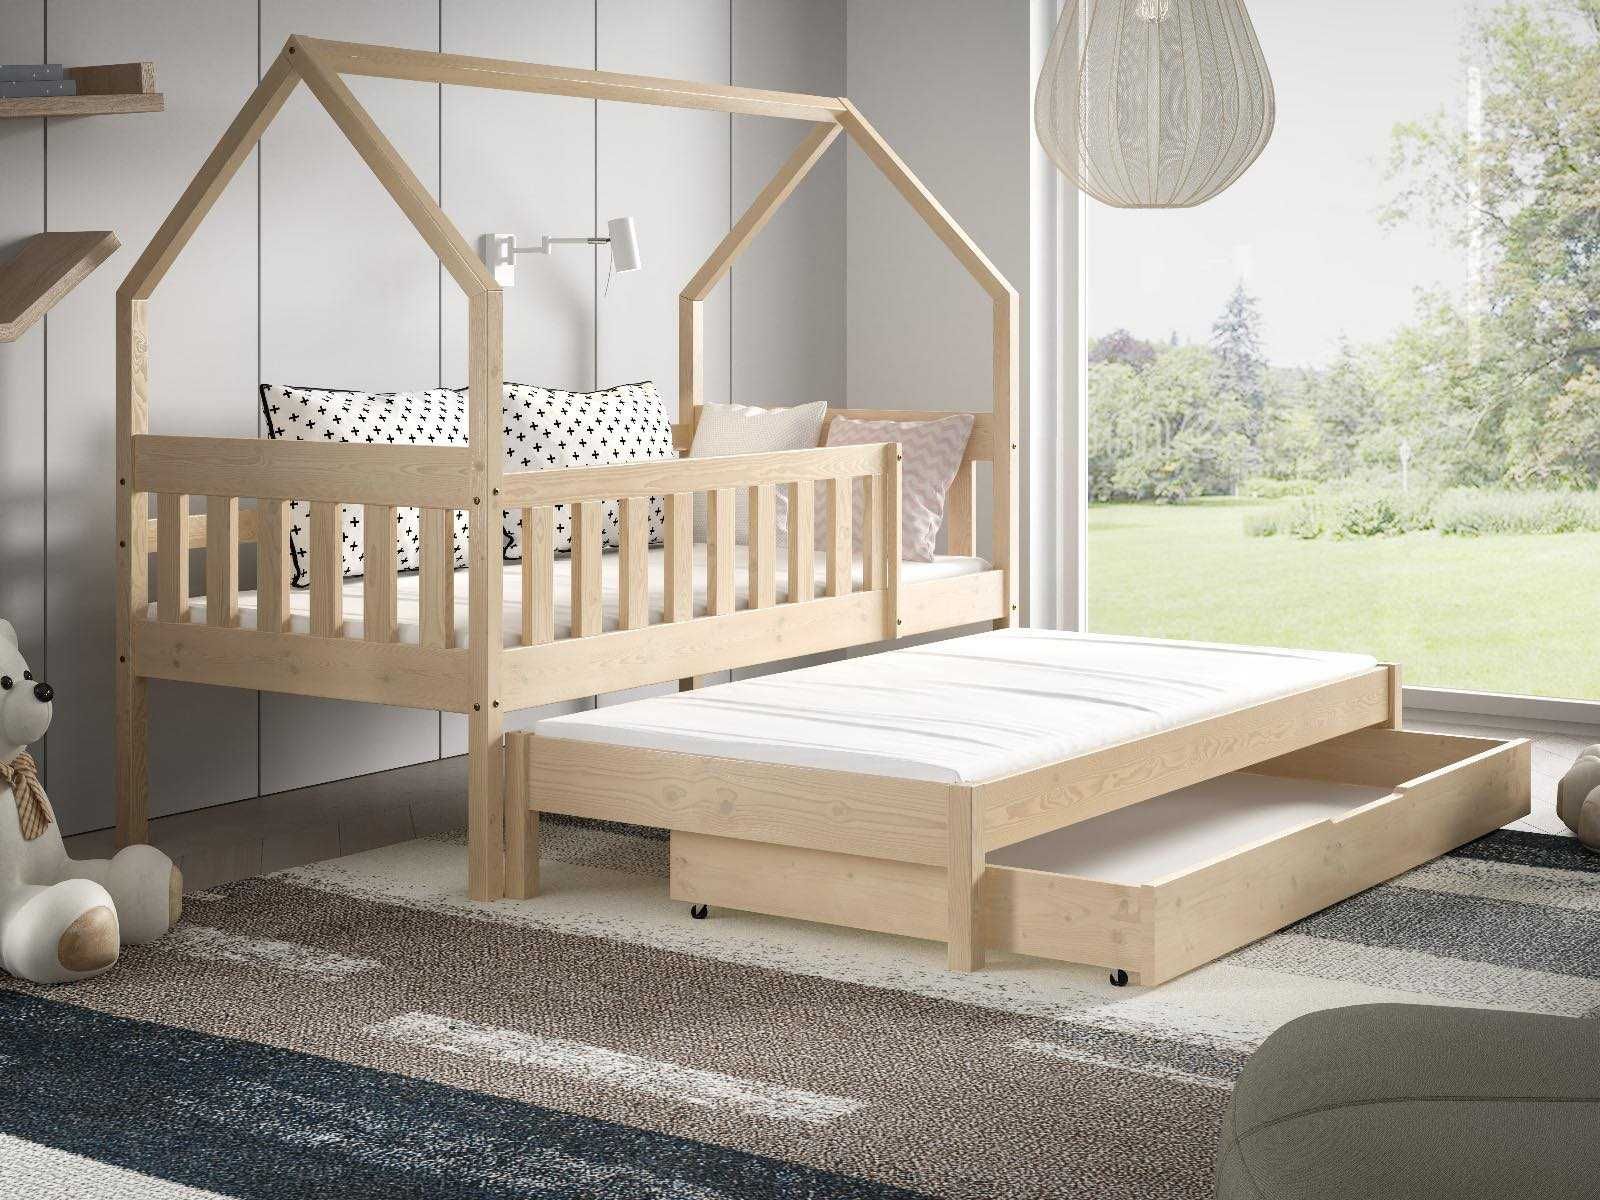 Łóżko dla 2 dzieci DOMEK LUNA 160x80 - materace piankowe w zestawie!